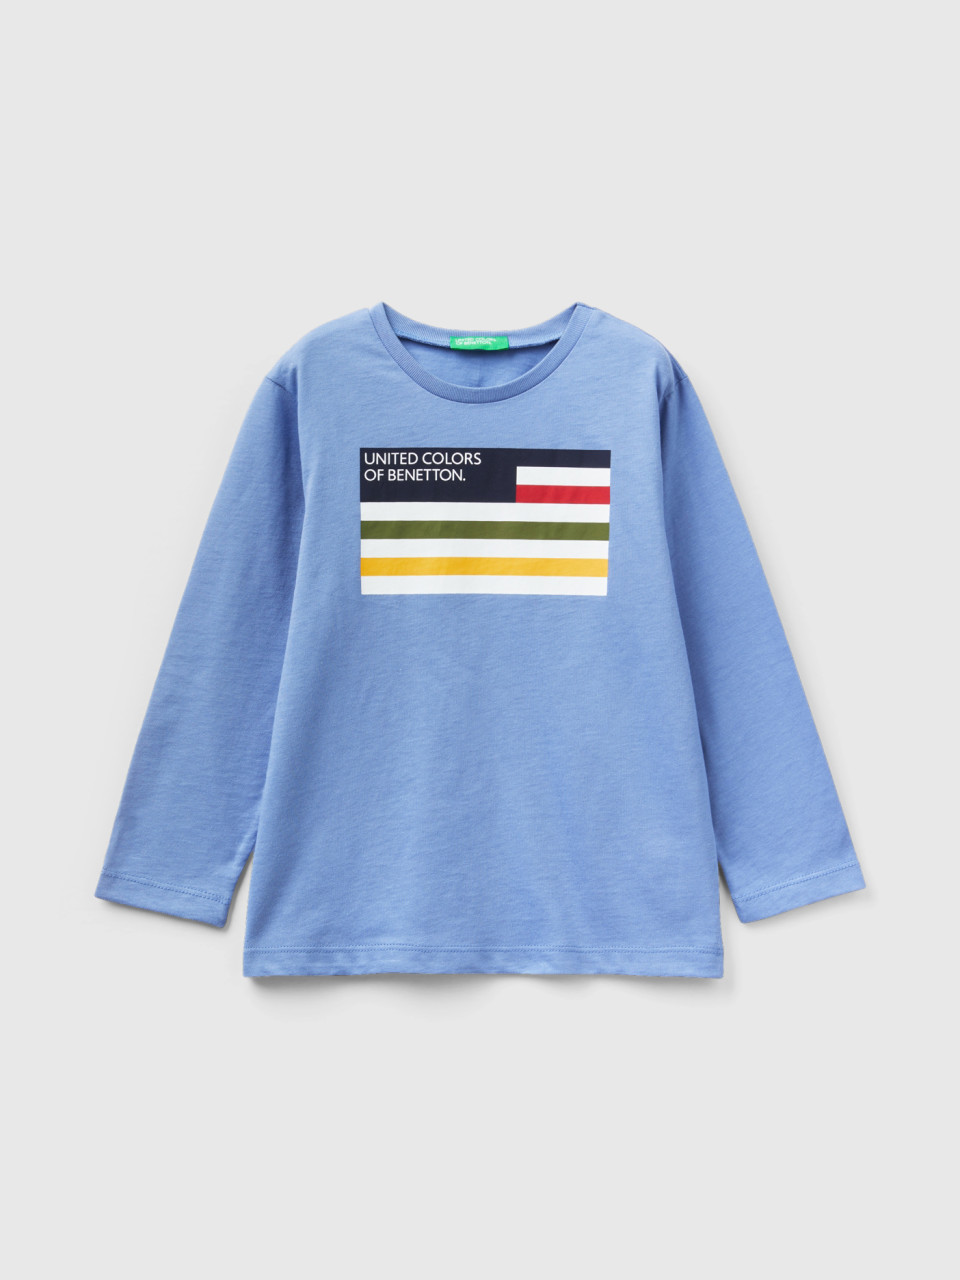 Benetton, T-shirt En Coton Bio À Manches Longues, Bleu Clair, Enfants